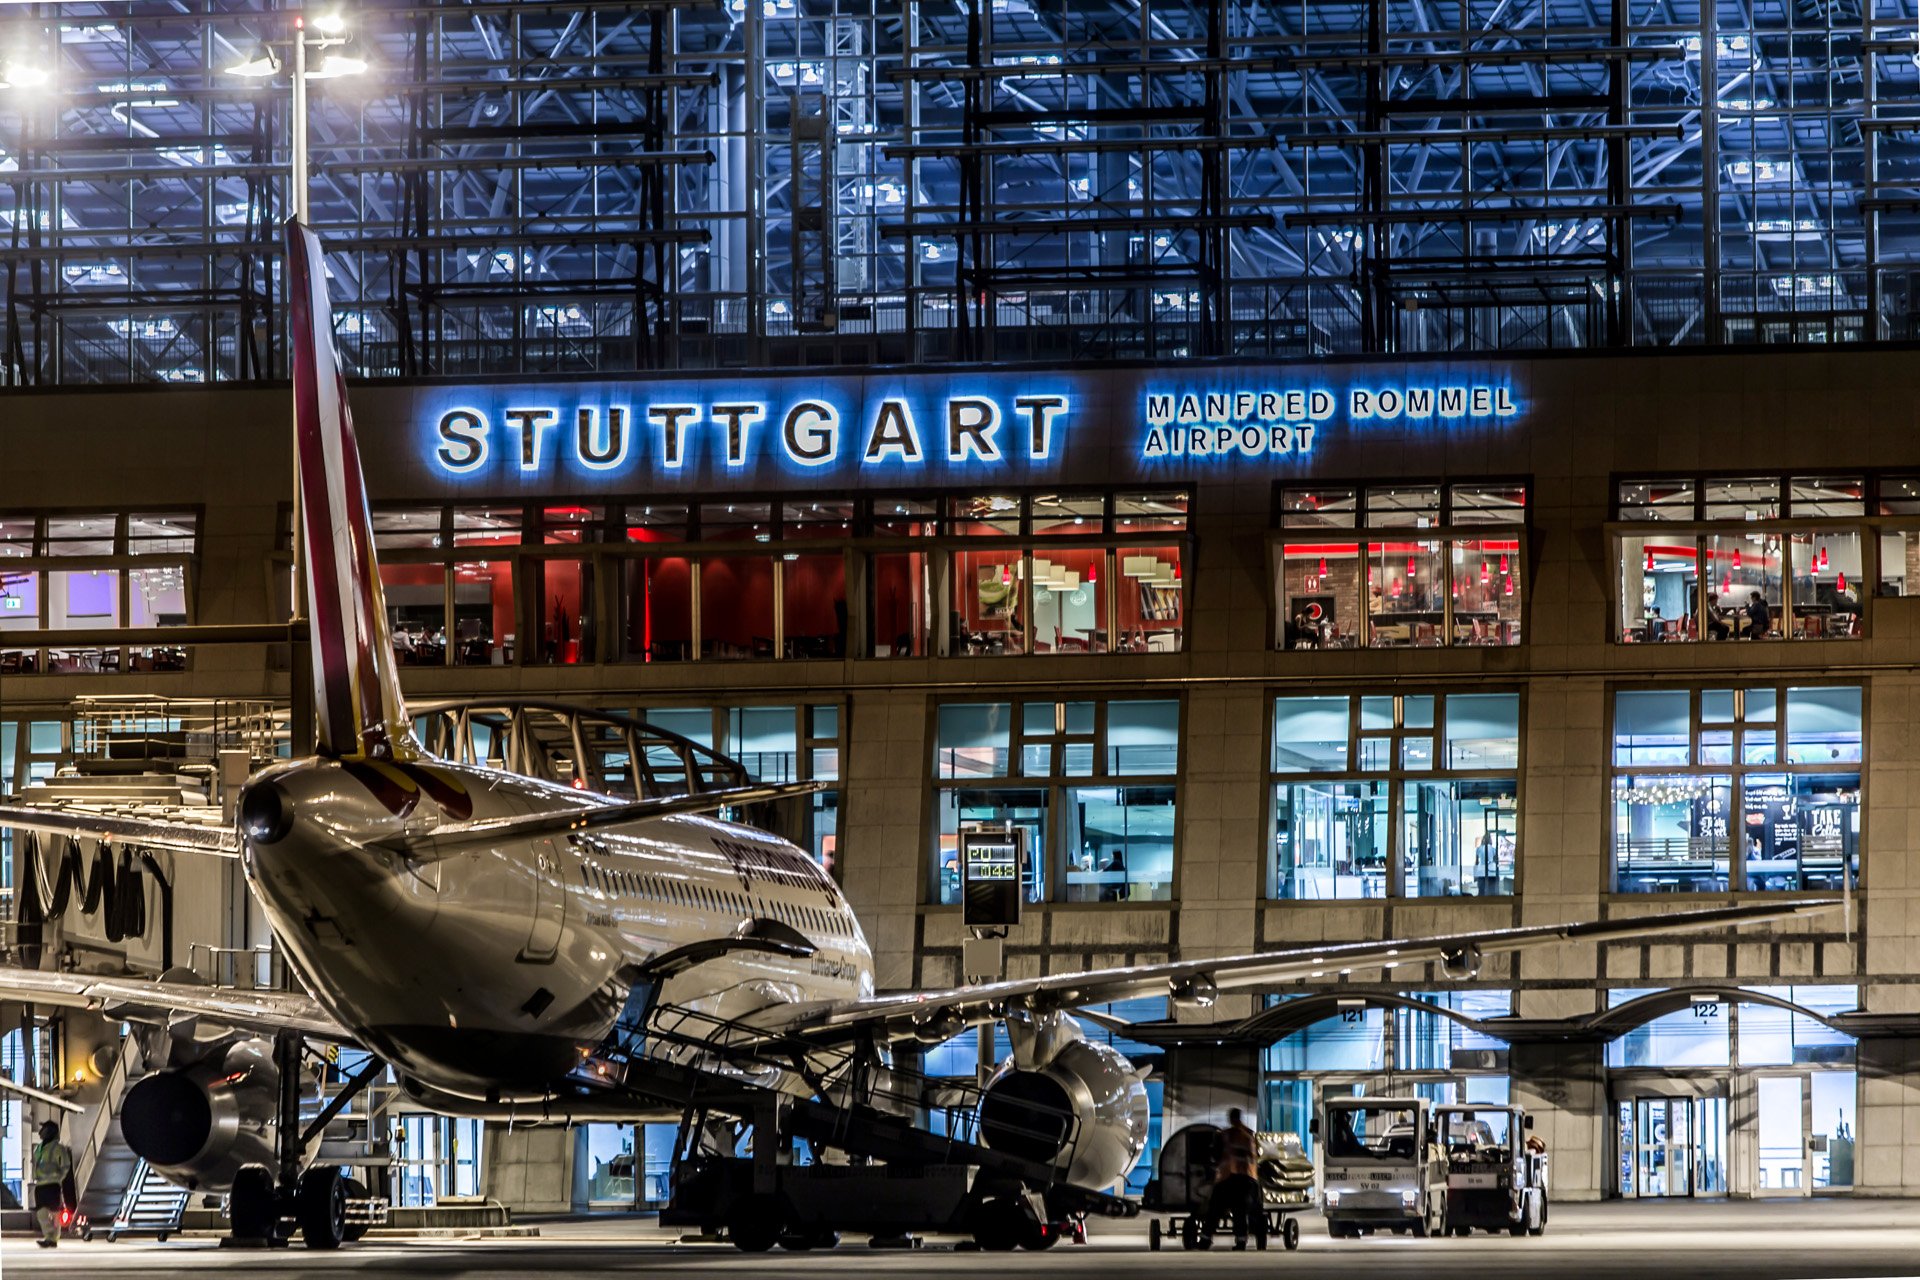 Stuttgart လေဆိပ်သည် 2040 ခုနှစ်အထိ ကာဗွန်လျှော့ချရေး အစီအစဉ်သစ်ကို အကောင်အထည်ဖော်နေပါသည်။